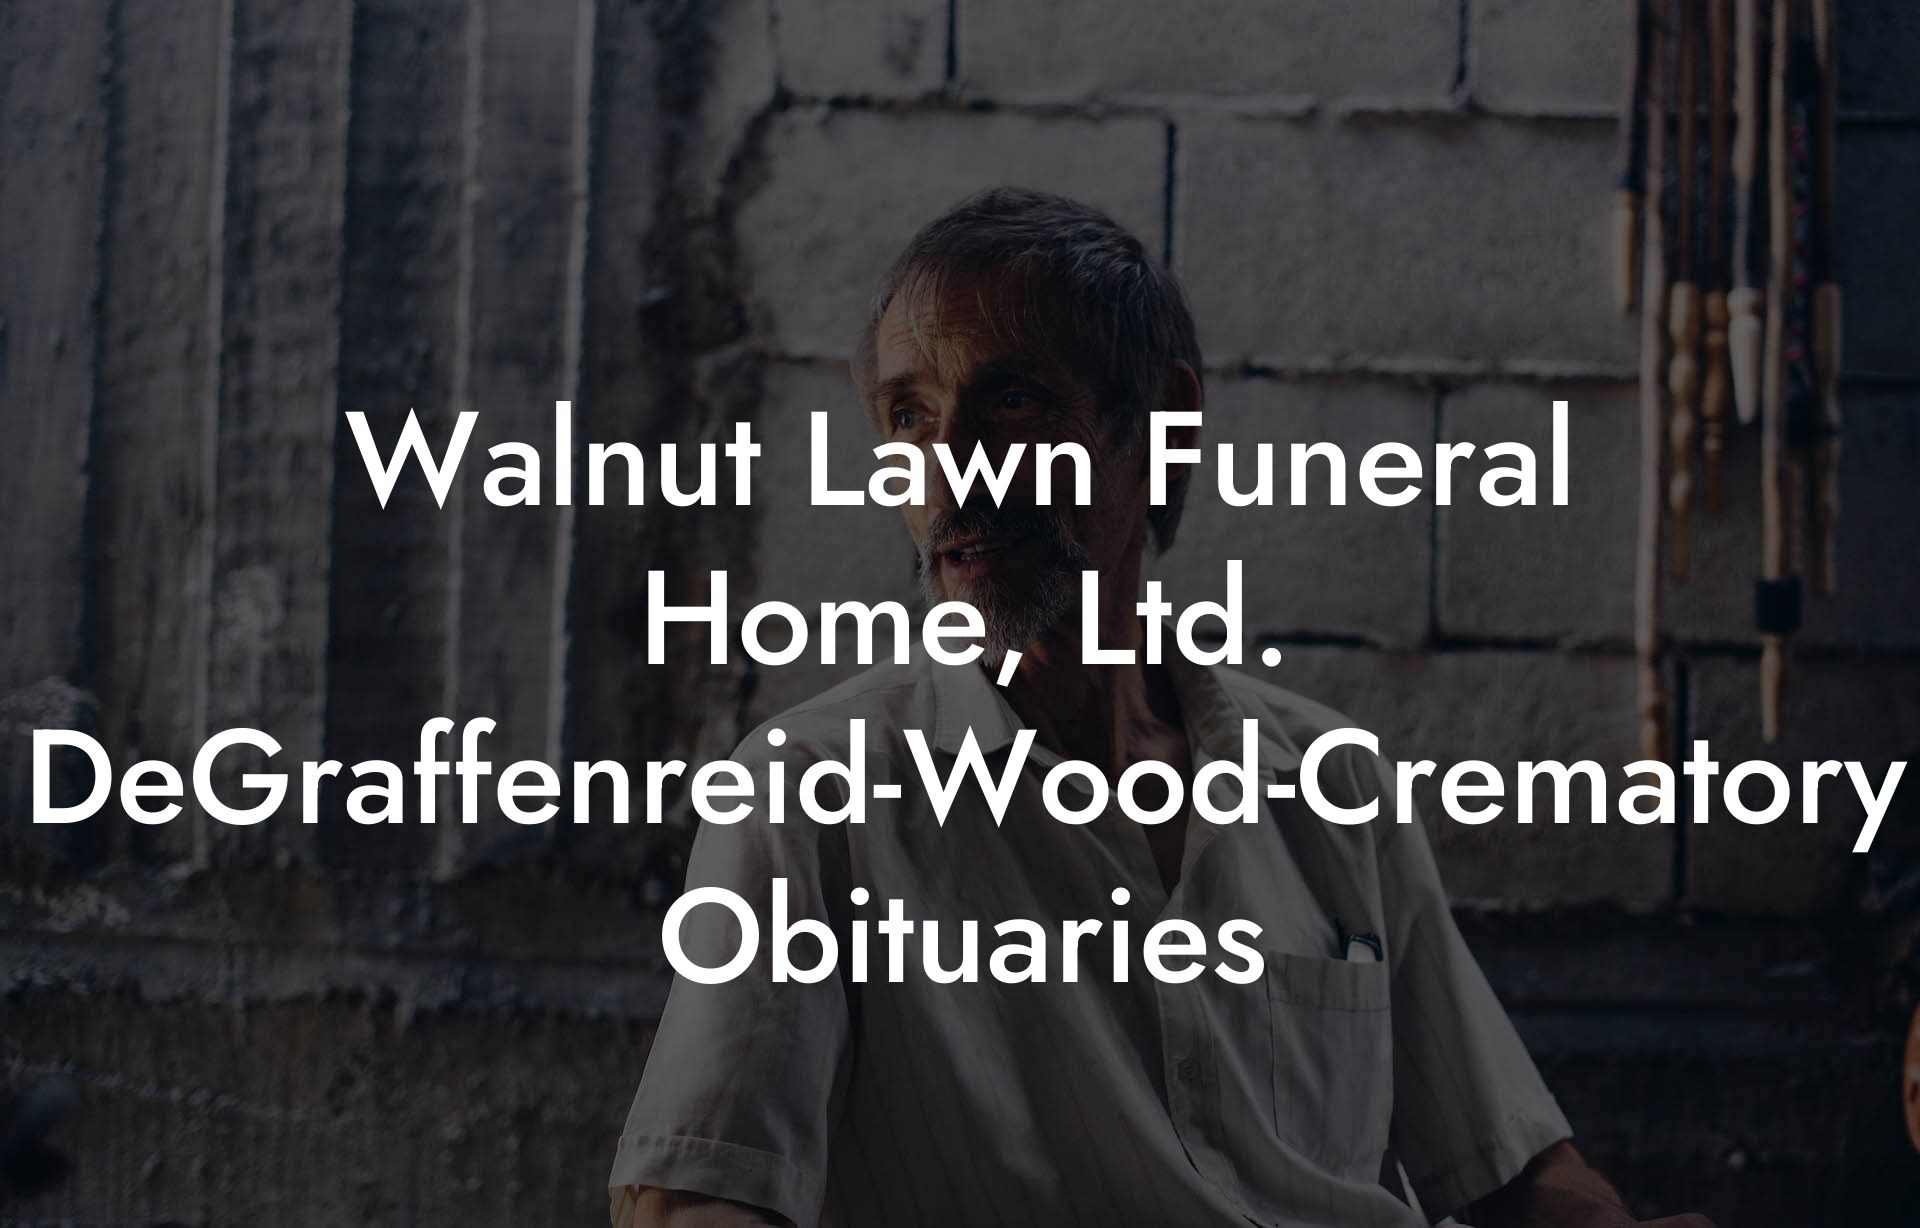 Walnut Lawn Funeral Home, Ltd. DeGraffenreid-Wood-Crematory Obituaries